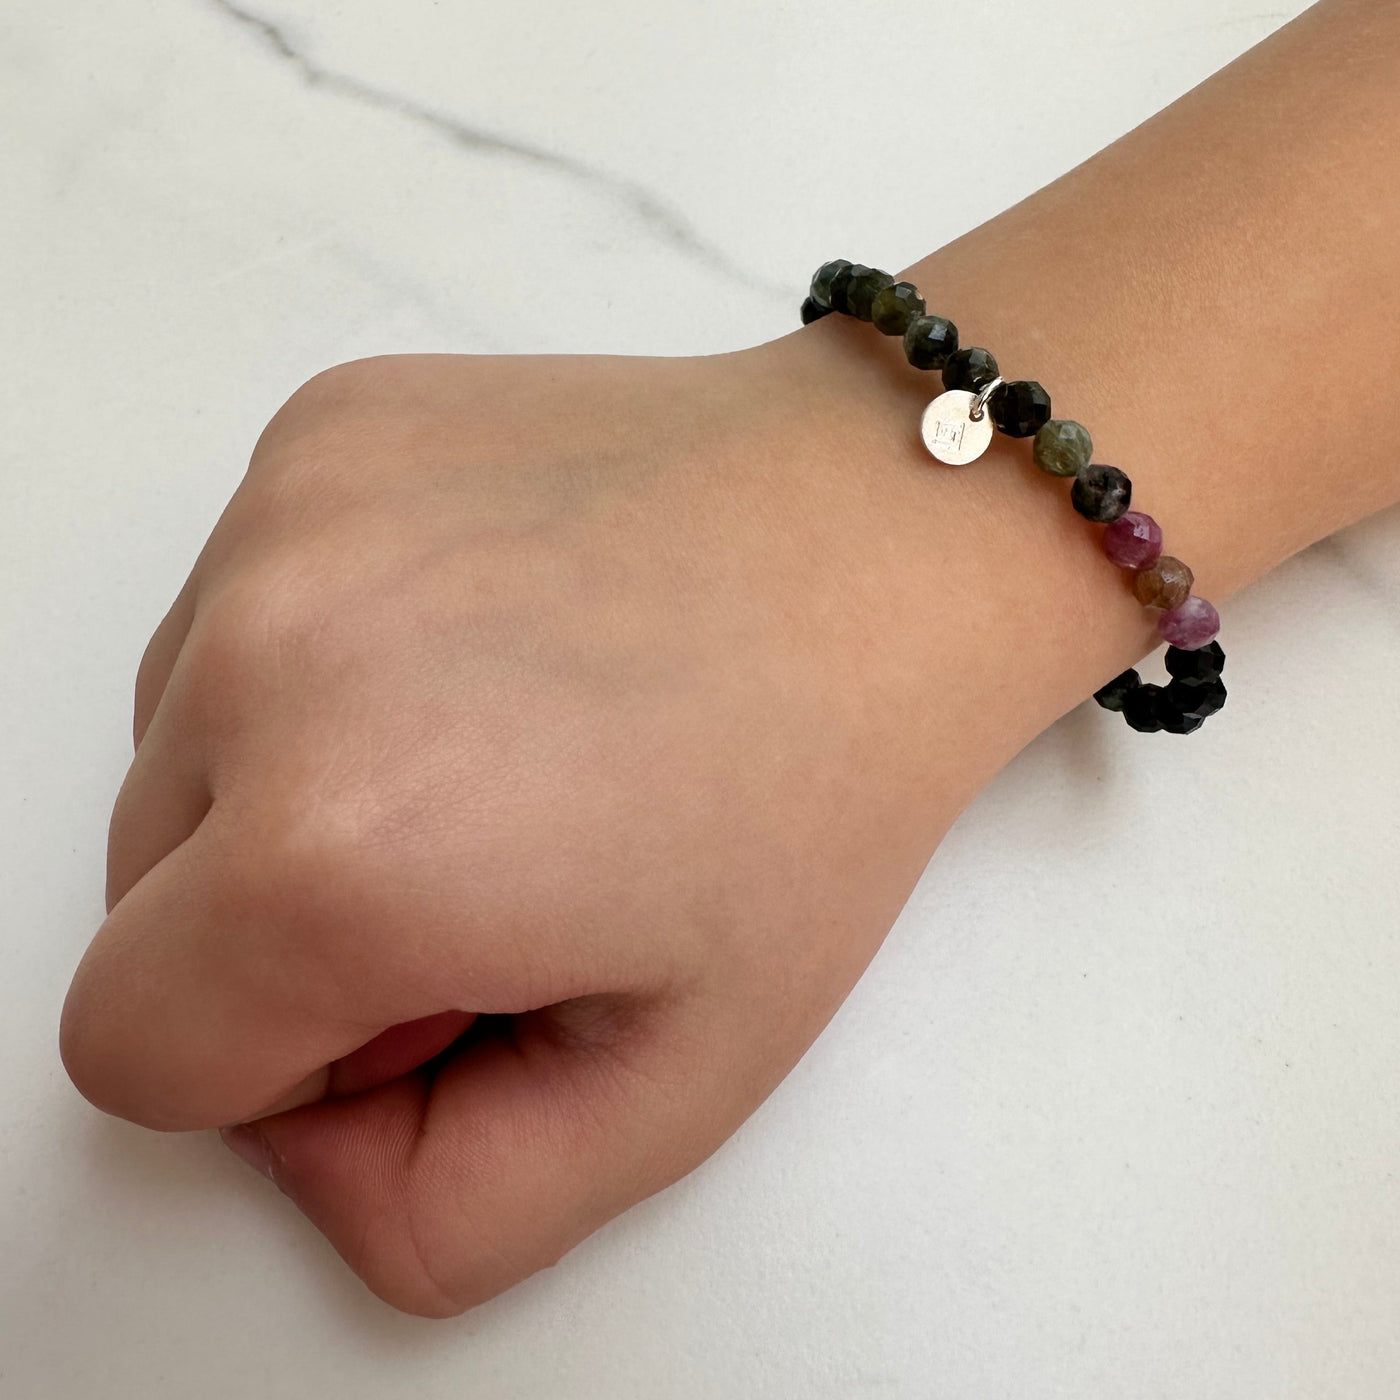 children's watermelon tourmaline natural gemstone bracelet 4mm beads